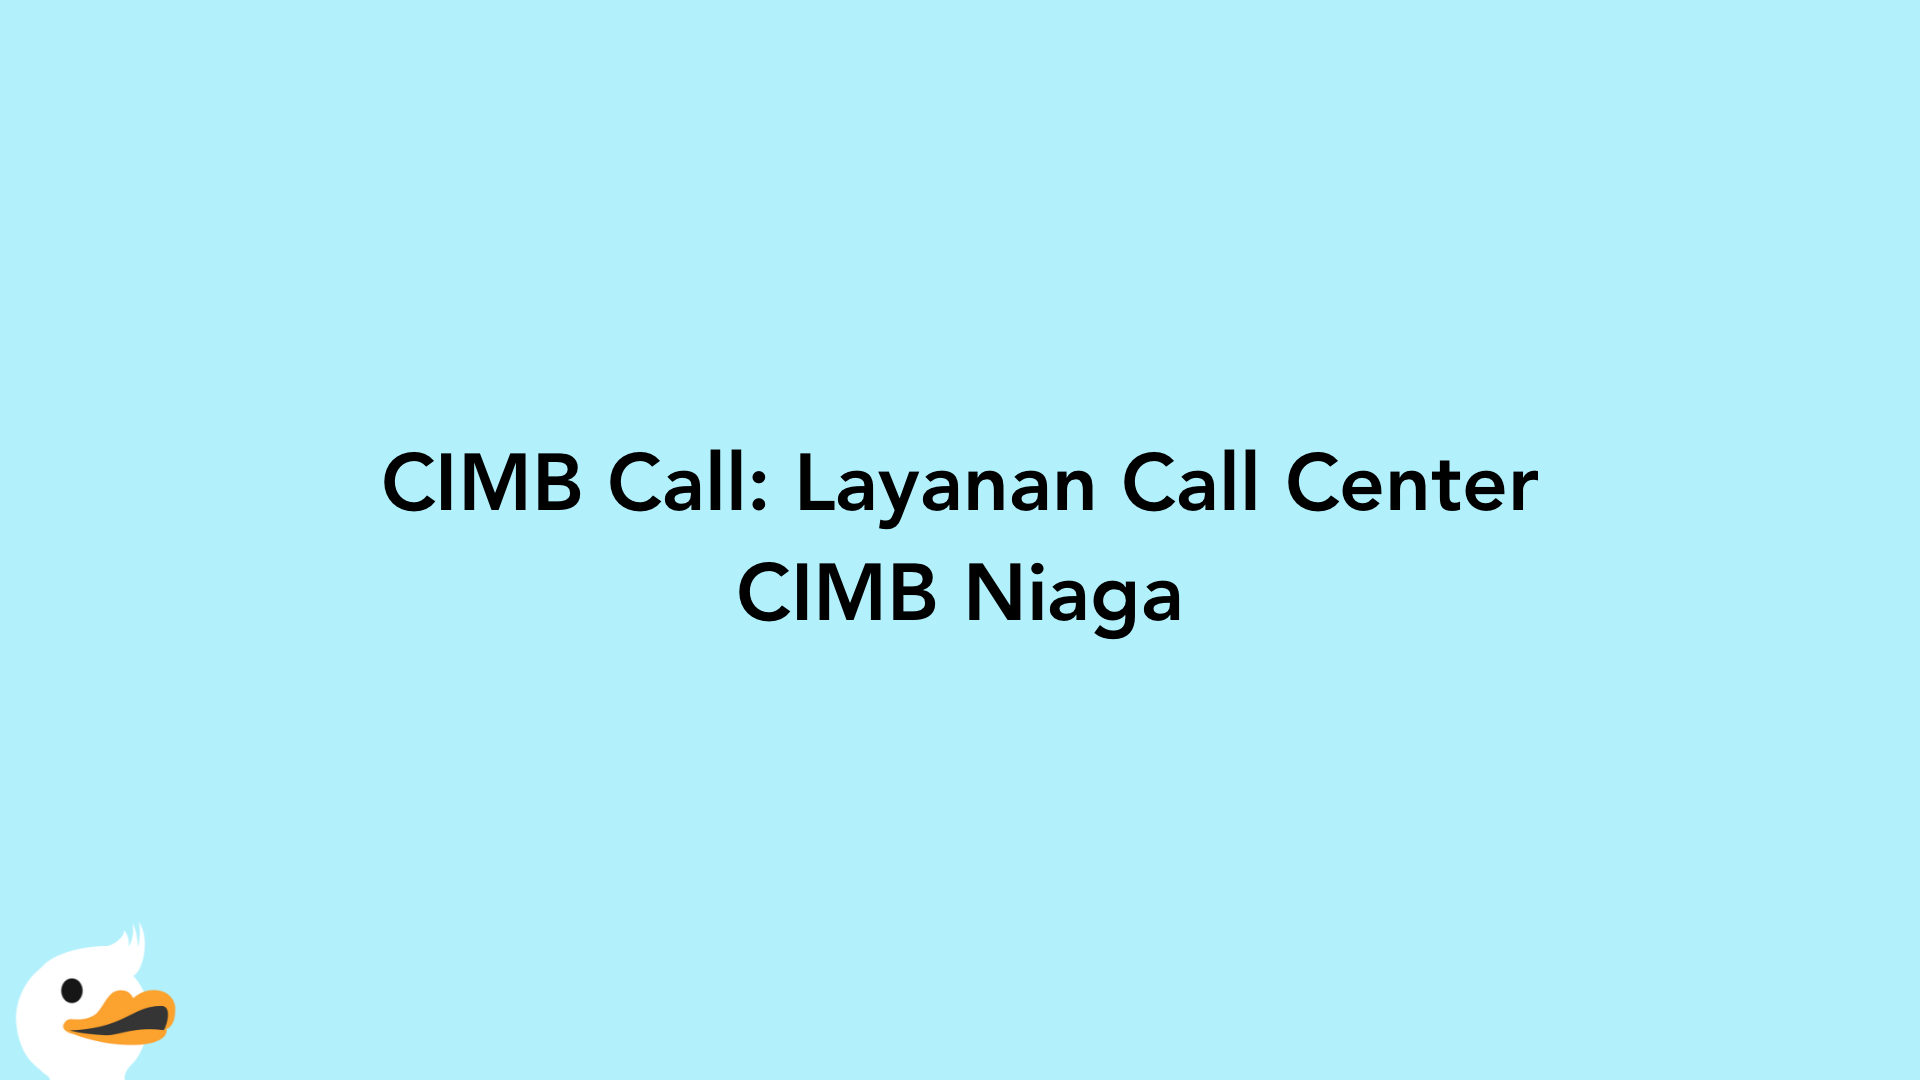 CIMB Call: Layanan Call Center CIMB Niaga